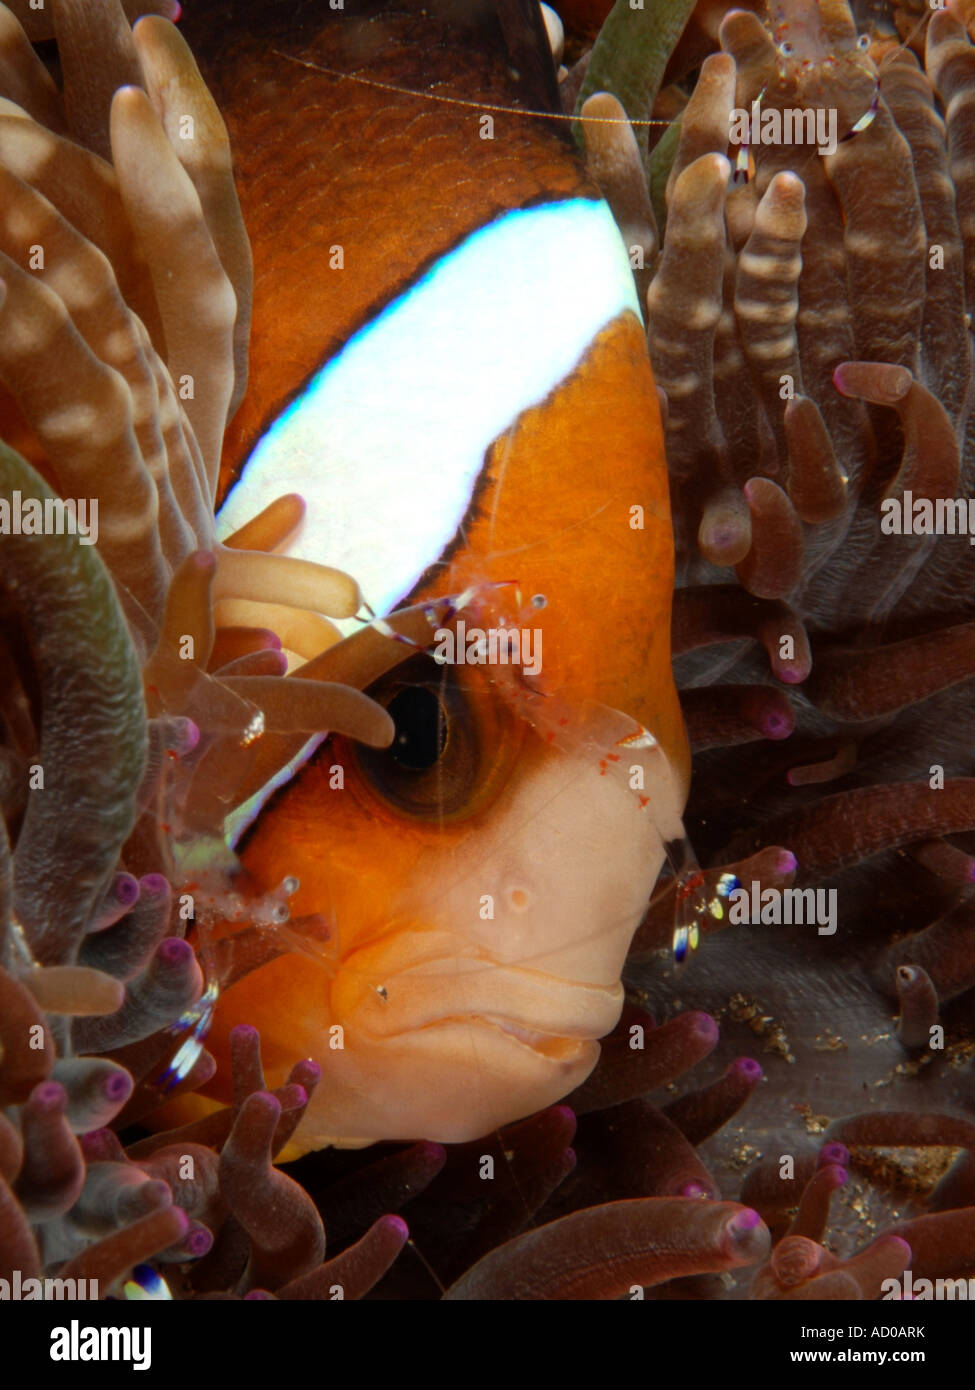 Pesce pagliaccio, pesce di anemone, anemone, subacquea, Indonesia, Lembeh strait, scuba diving, oceano mare, simbiosi, colorato Foto Stock